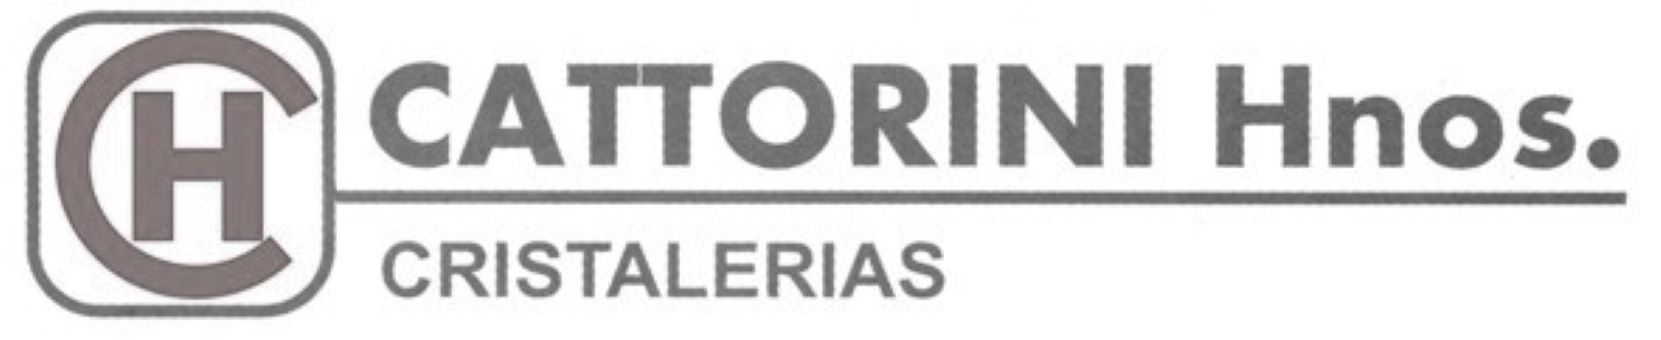 Logo Cattorini